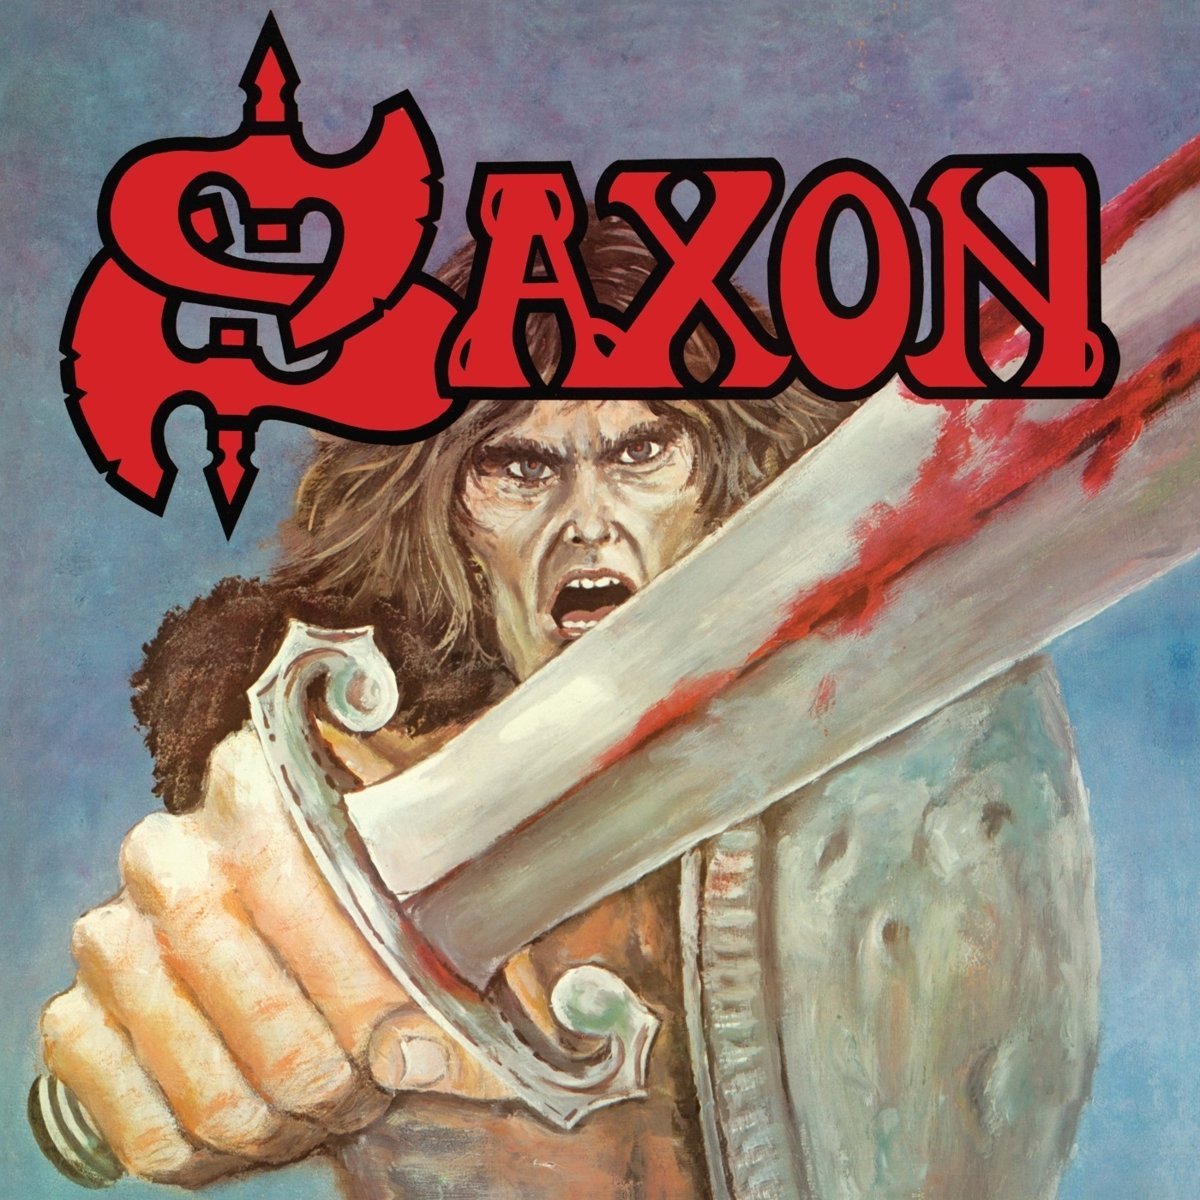 Saxon "Saxon" Digipak CD